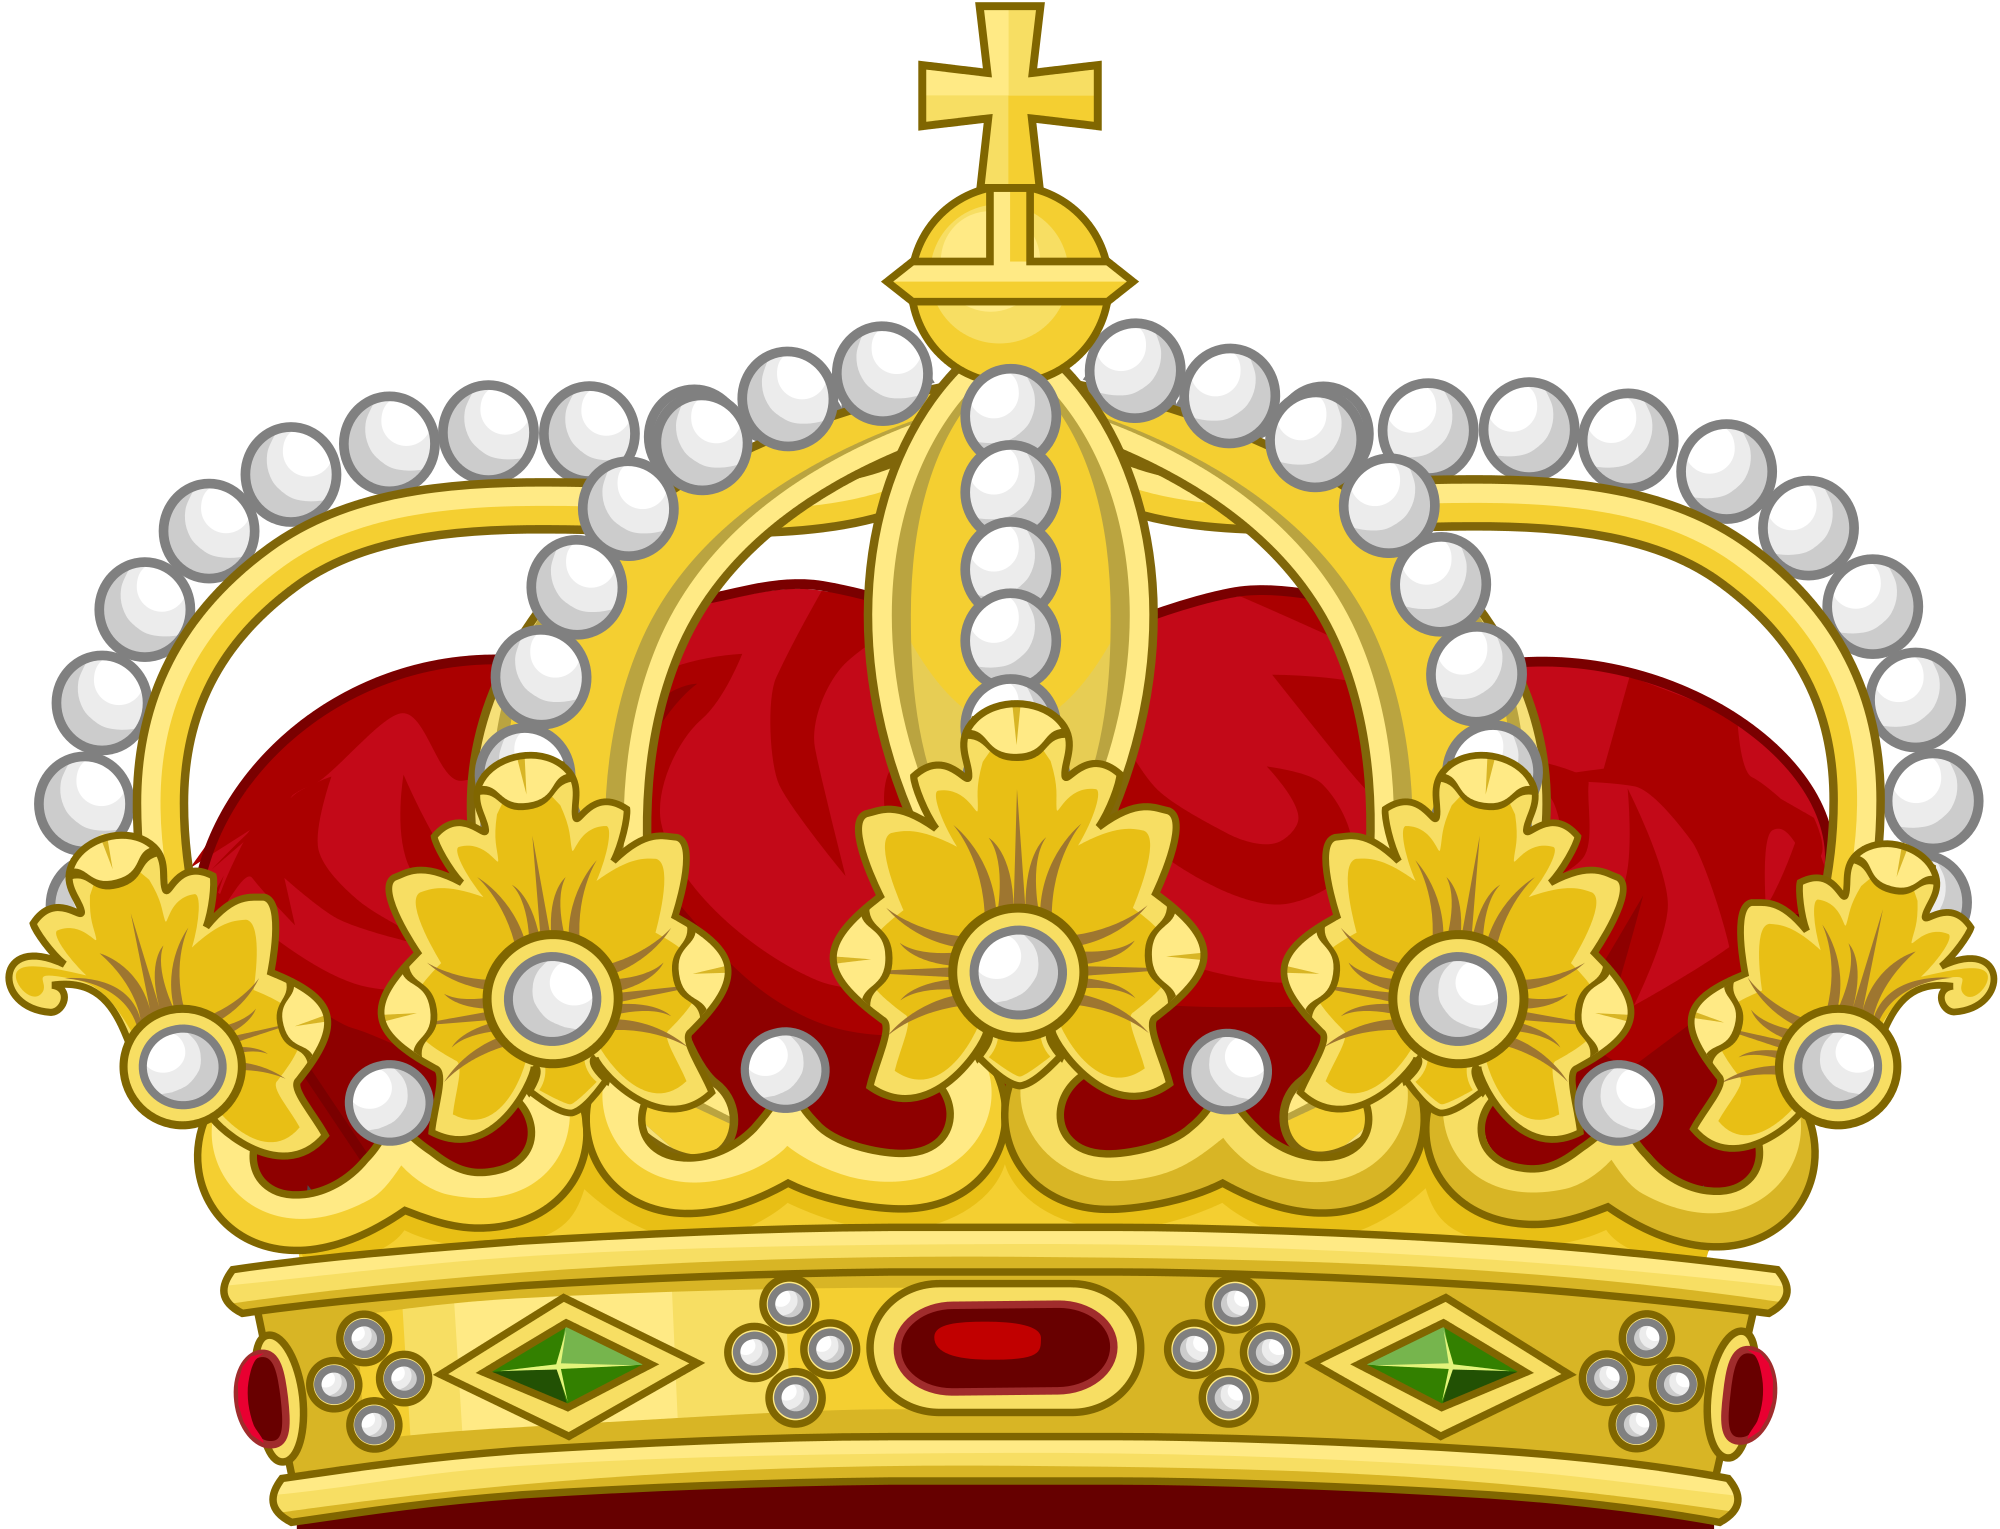 King crown logo png - photo#1